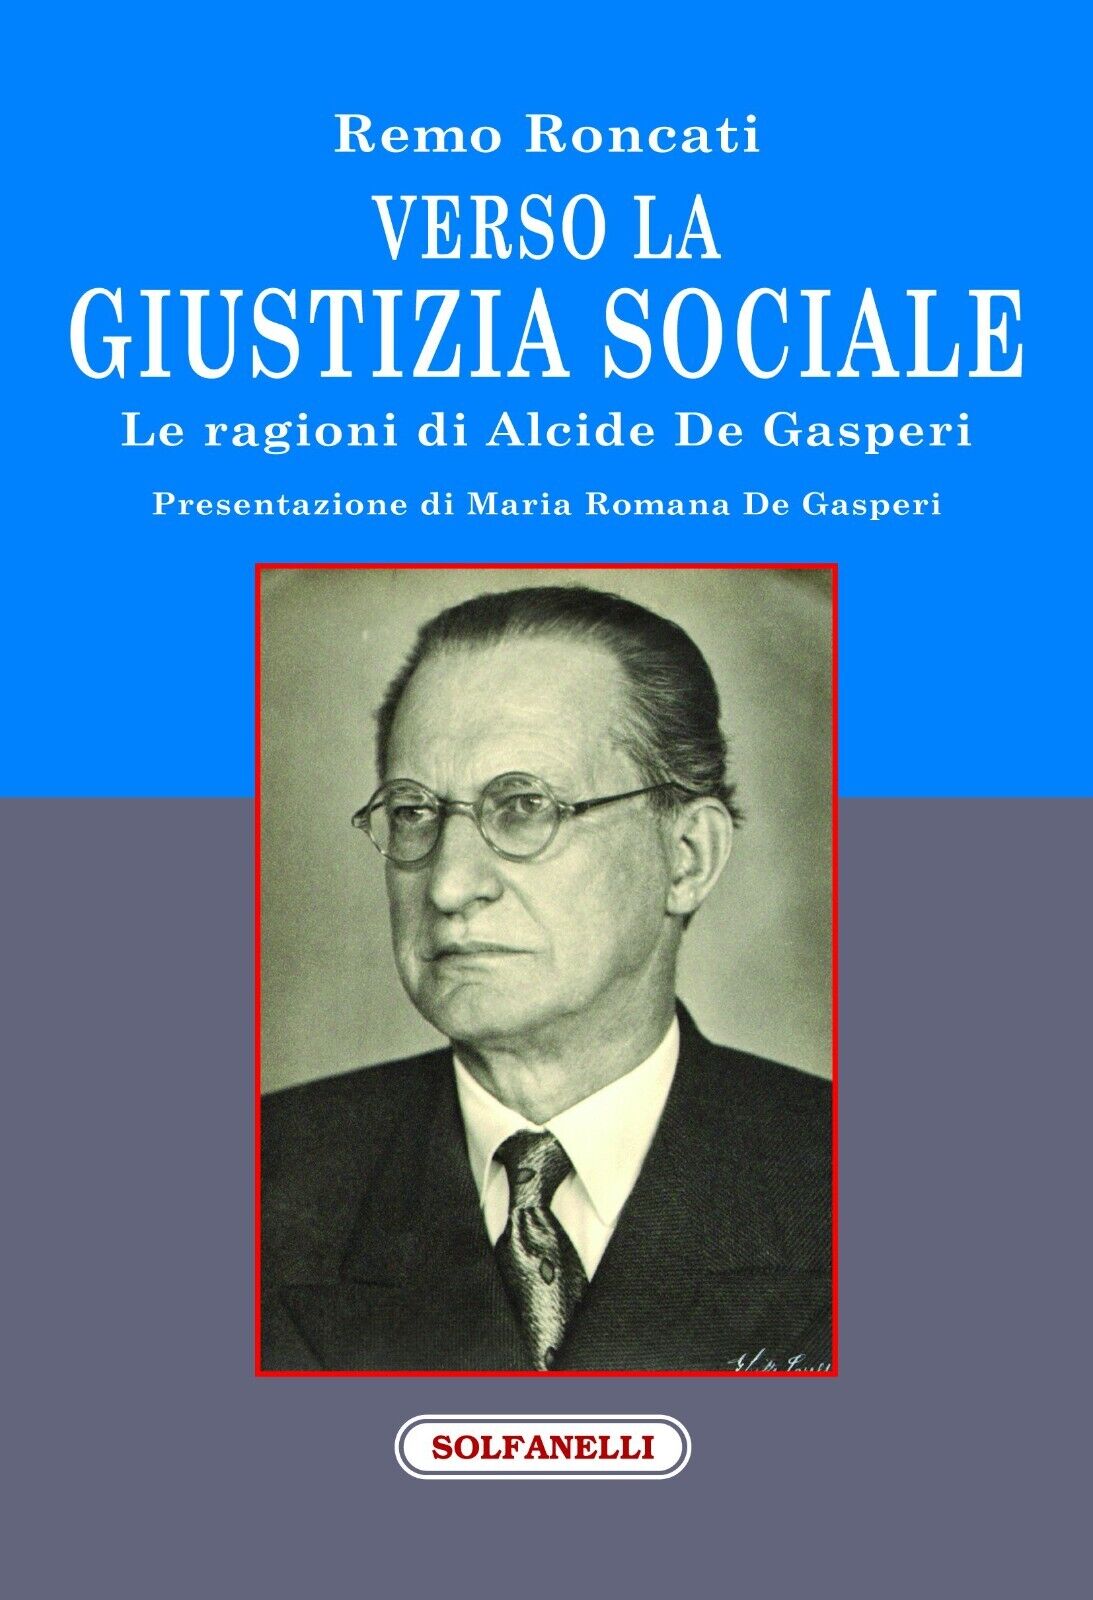 Verso la giustizia sociale. Le ragioni di Alcide De Gasperi di Remo Roncati, 2 libro usato